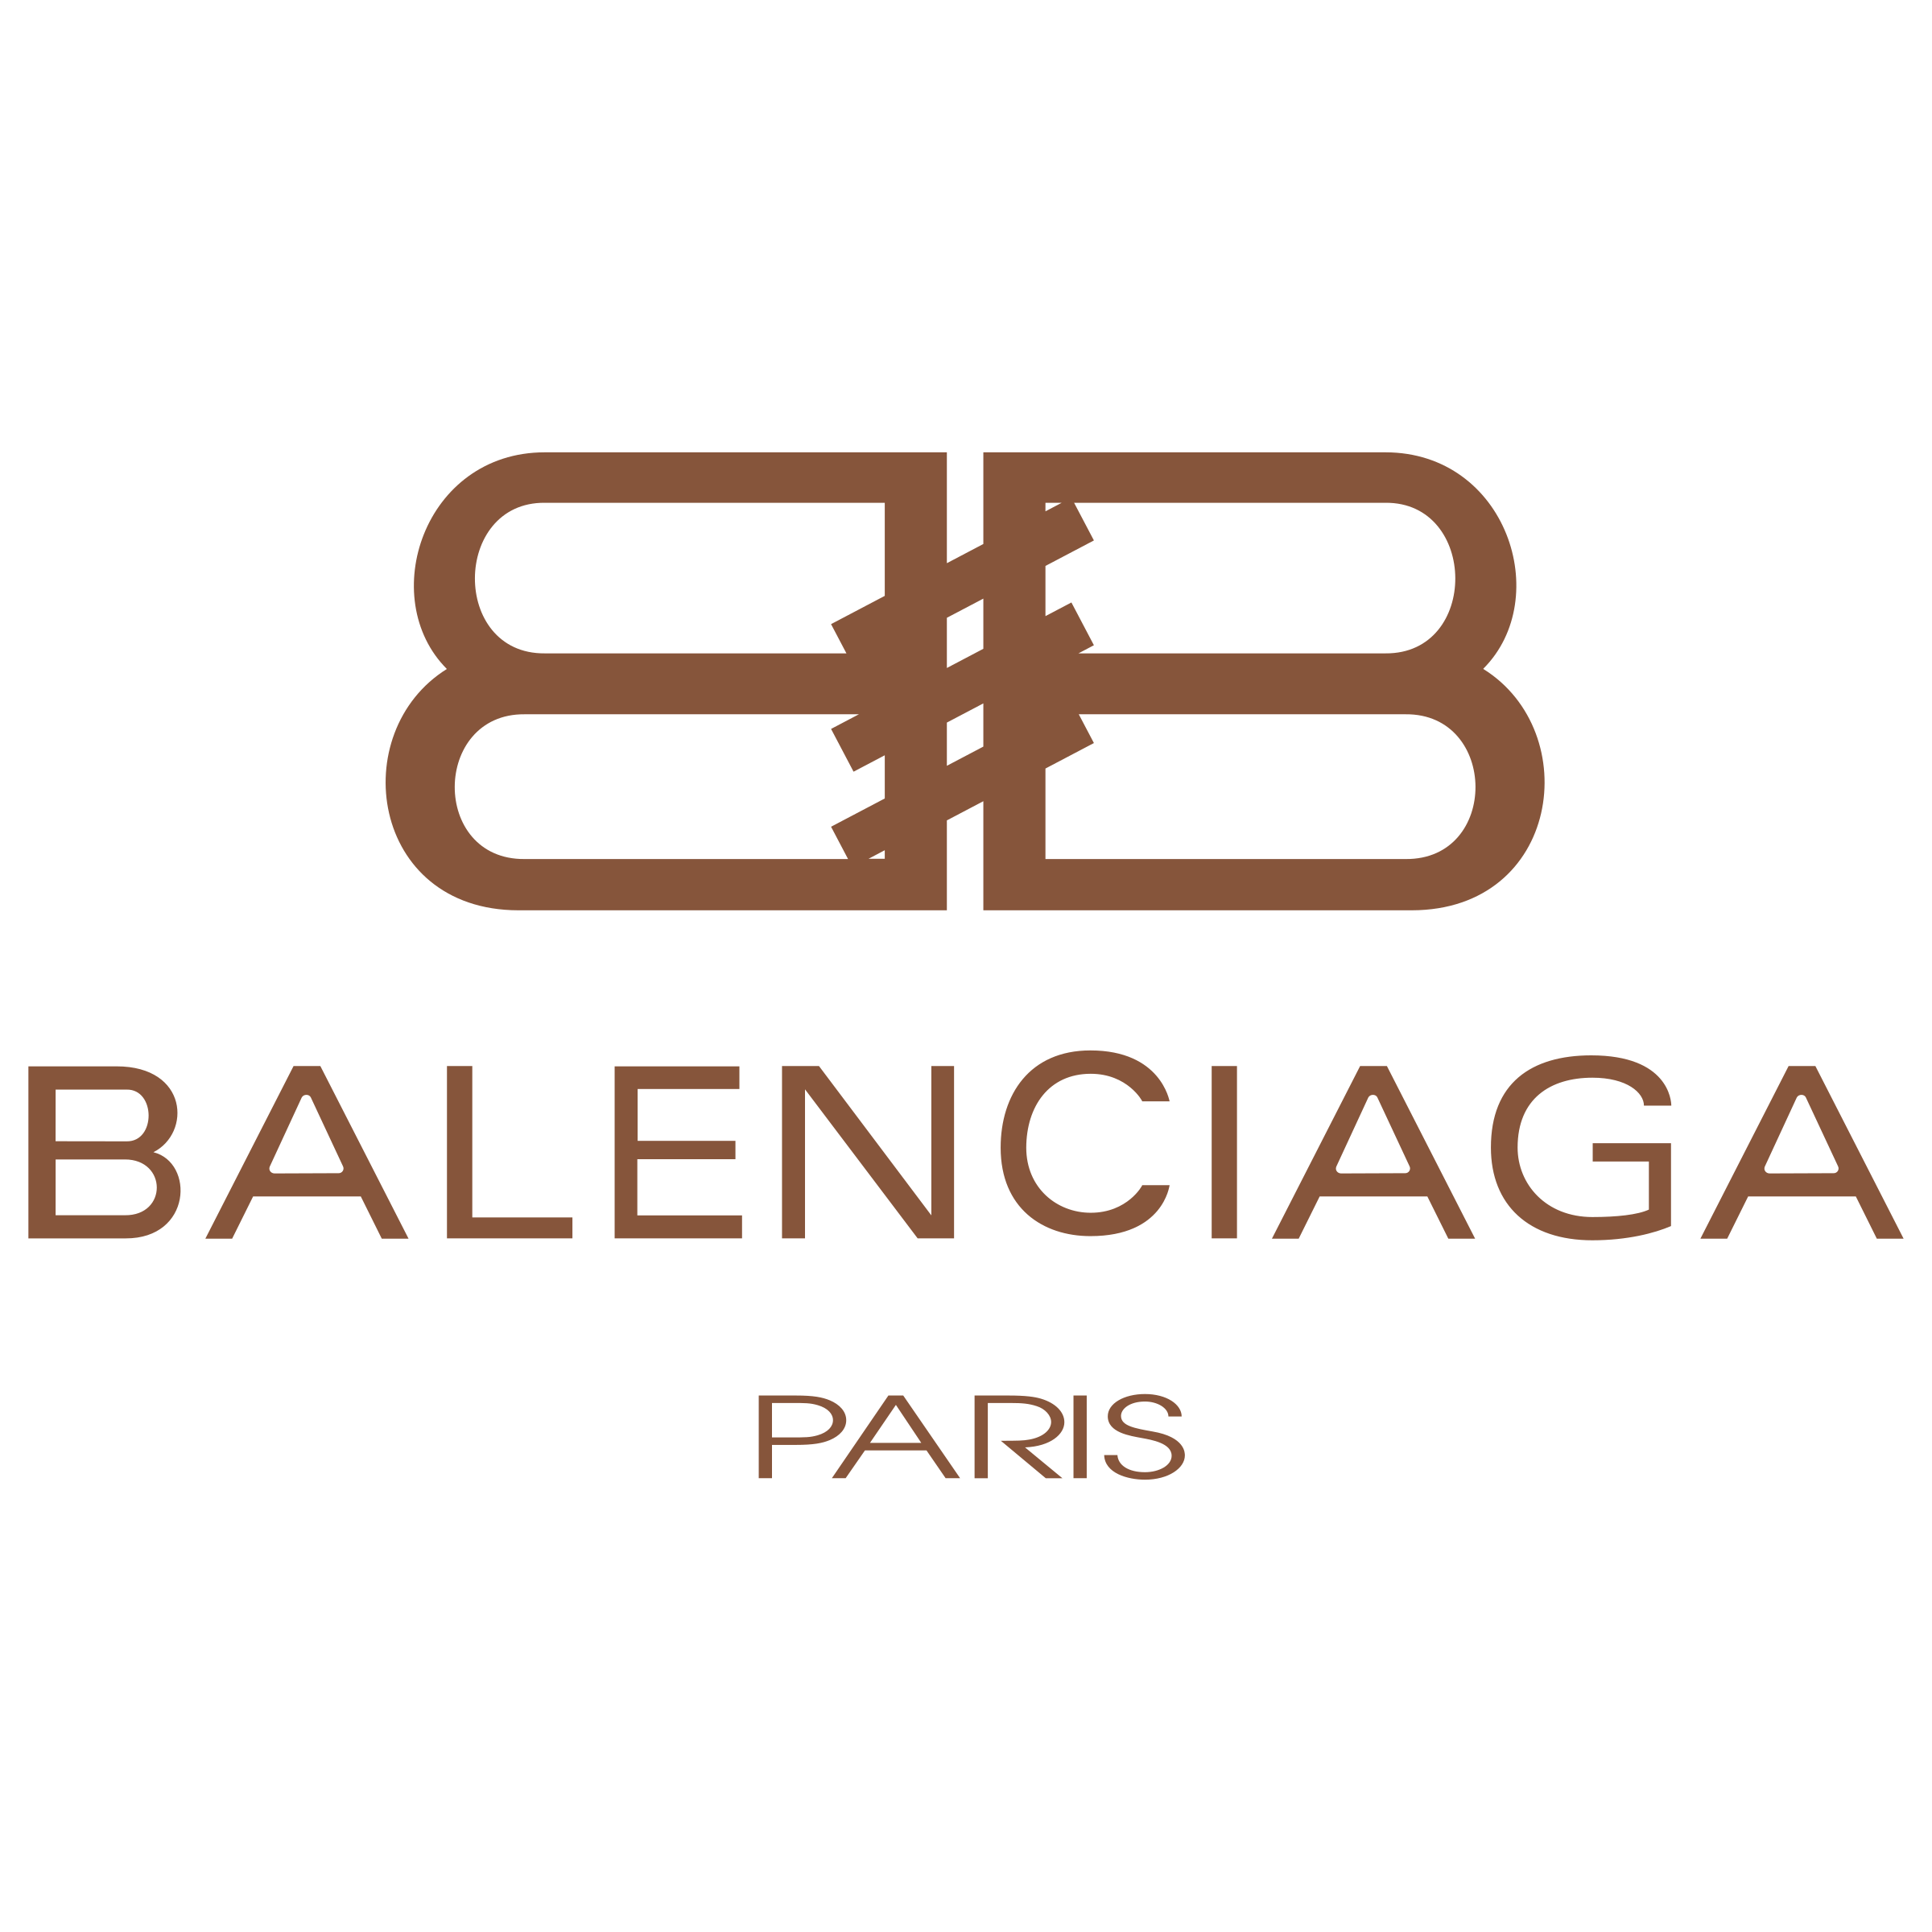 Balenciaga logo صور شفافة